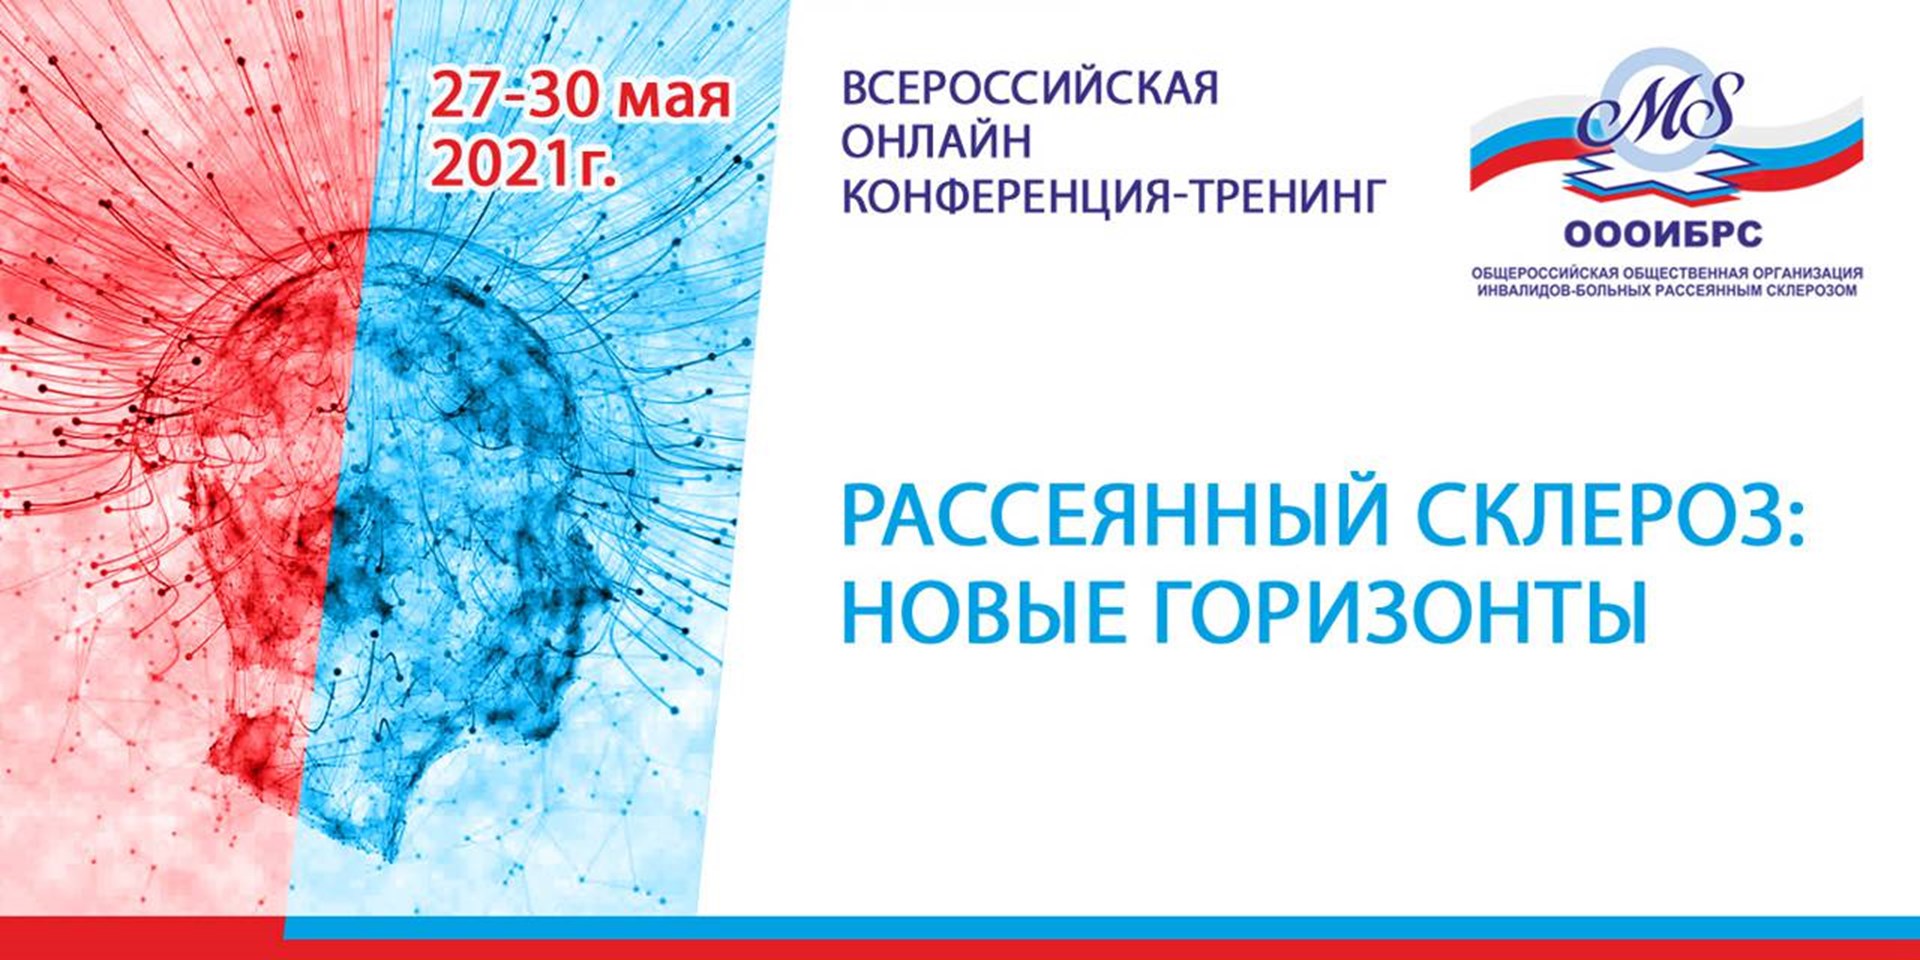 Москва. 27-30 мая. Тренинг для пациентов с рассеянным склерозом, о пациентах, вместе с пациентами